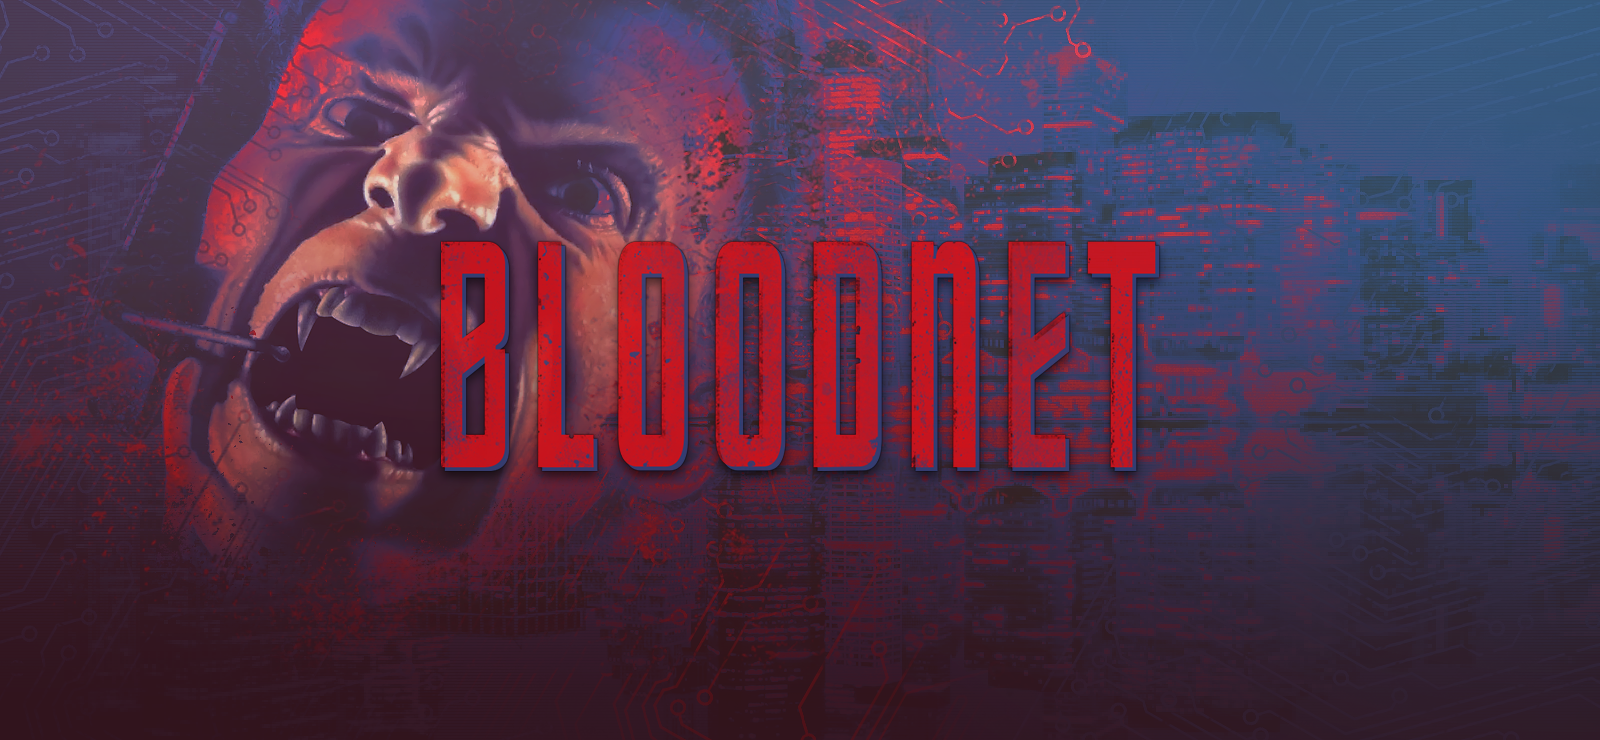 BloodNet